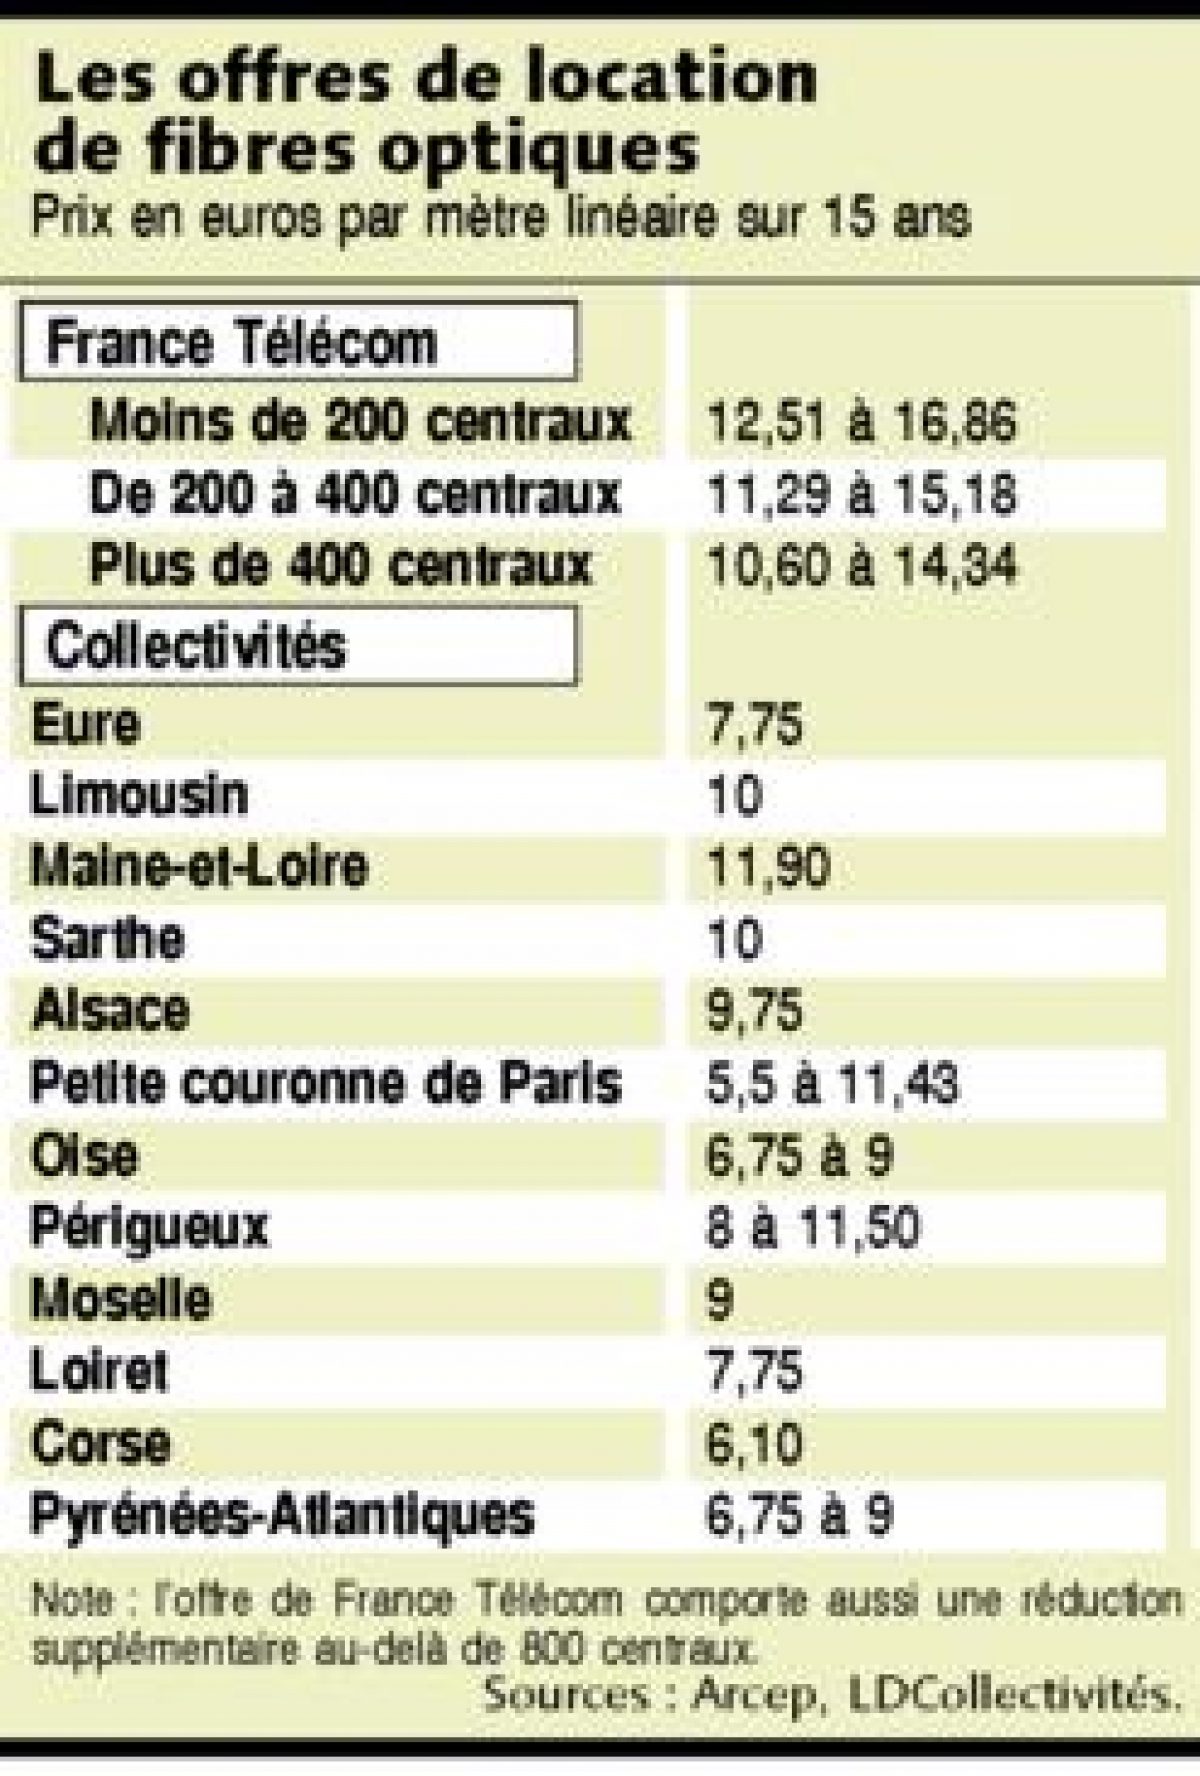 Free accuse France Télécom de refuser de louer ses fibres